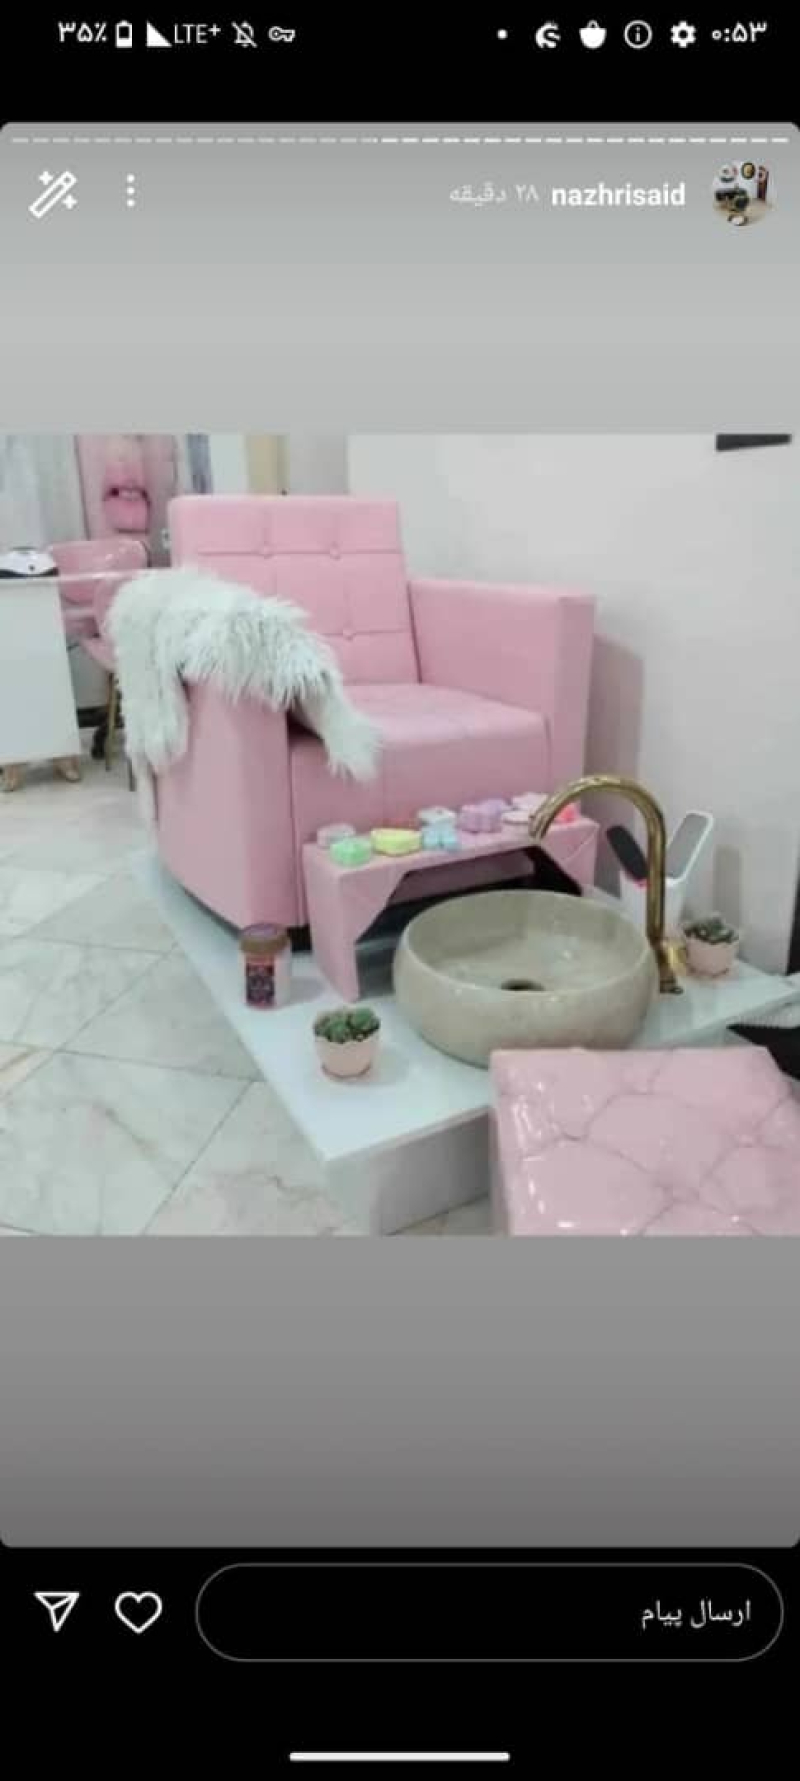 پدیکور آرایشگاهی مبلی زنانه همراه شیر آلات و استیج رنگ بندی مختلف ارسال به سراسر ایران